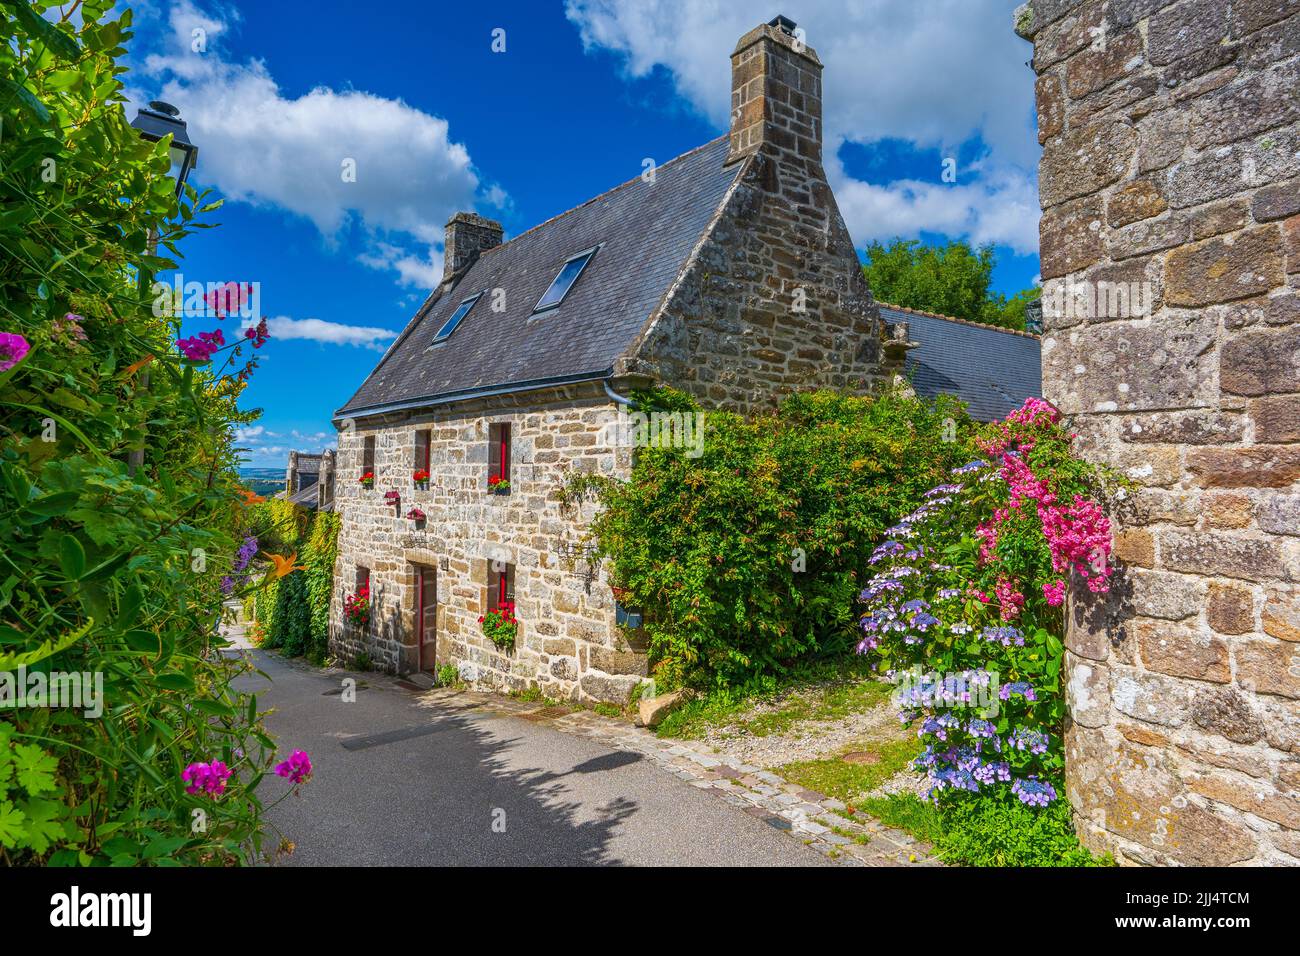 Maisons typiques en pierre dans le village breton de Locronan (France) Banque D'Images